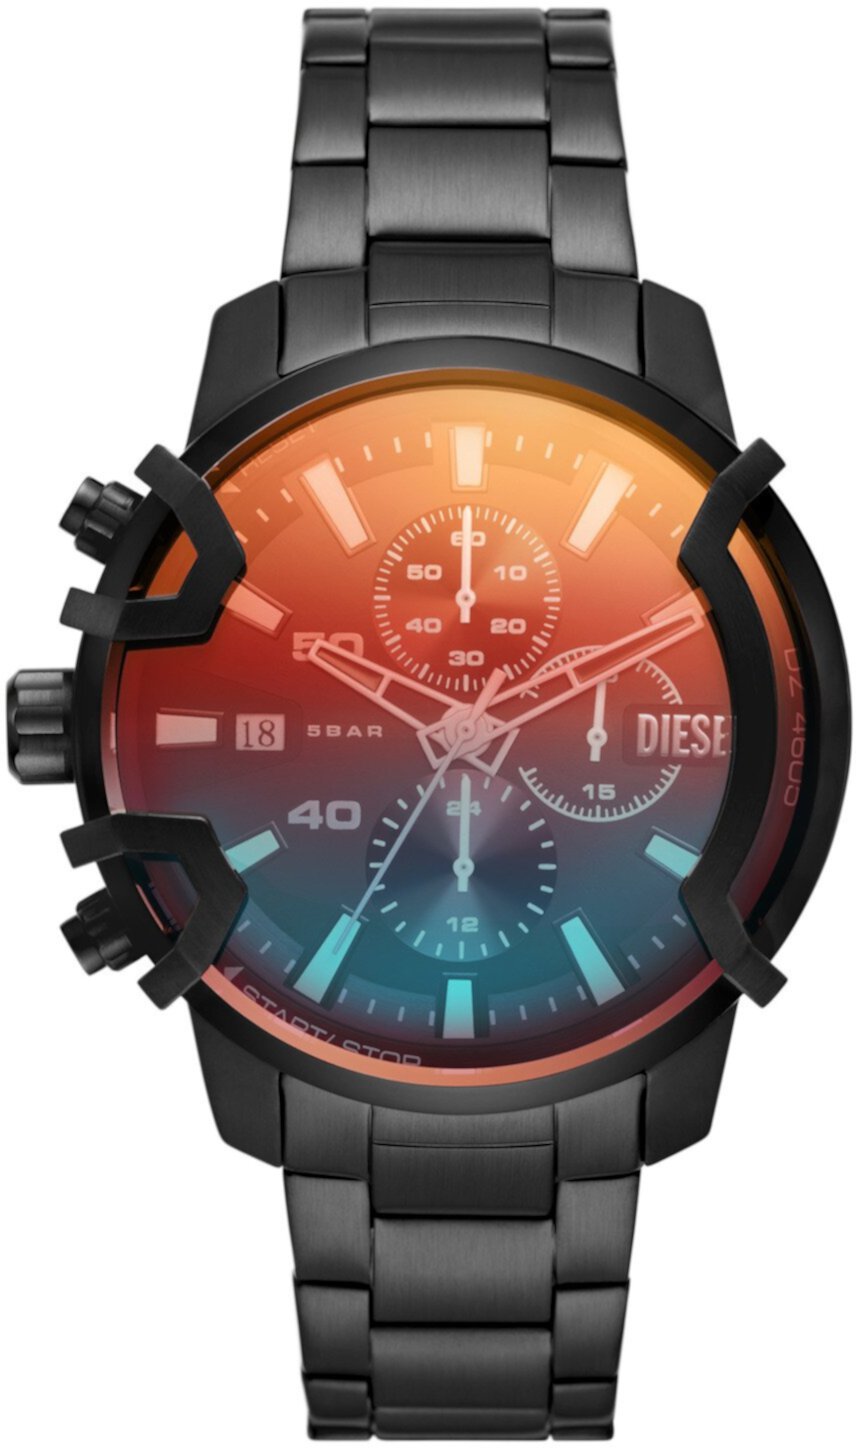 Миниатюрные часы Griffed из нержавеющей стали - DZ4605 Diesel